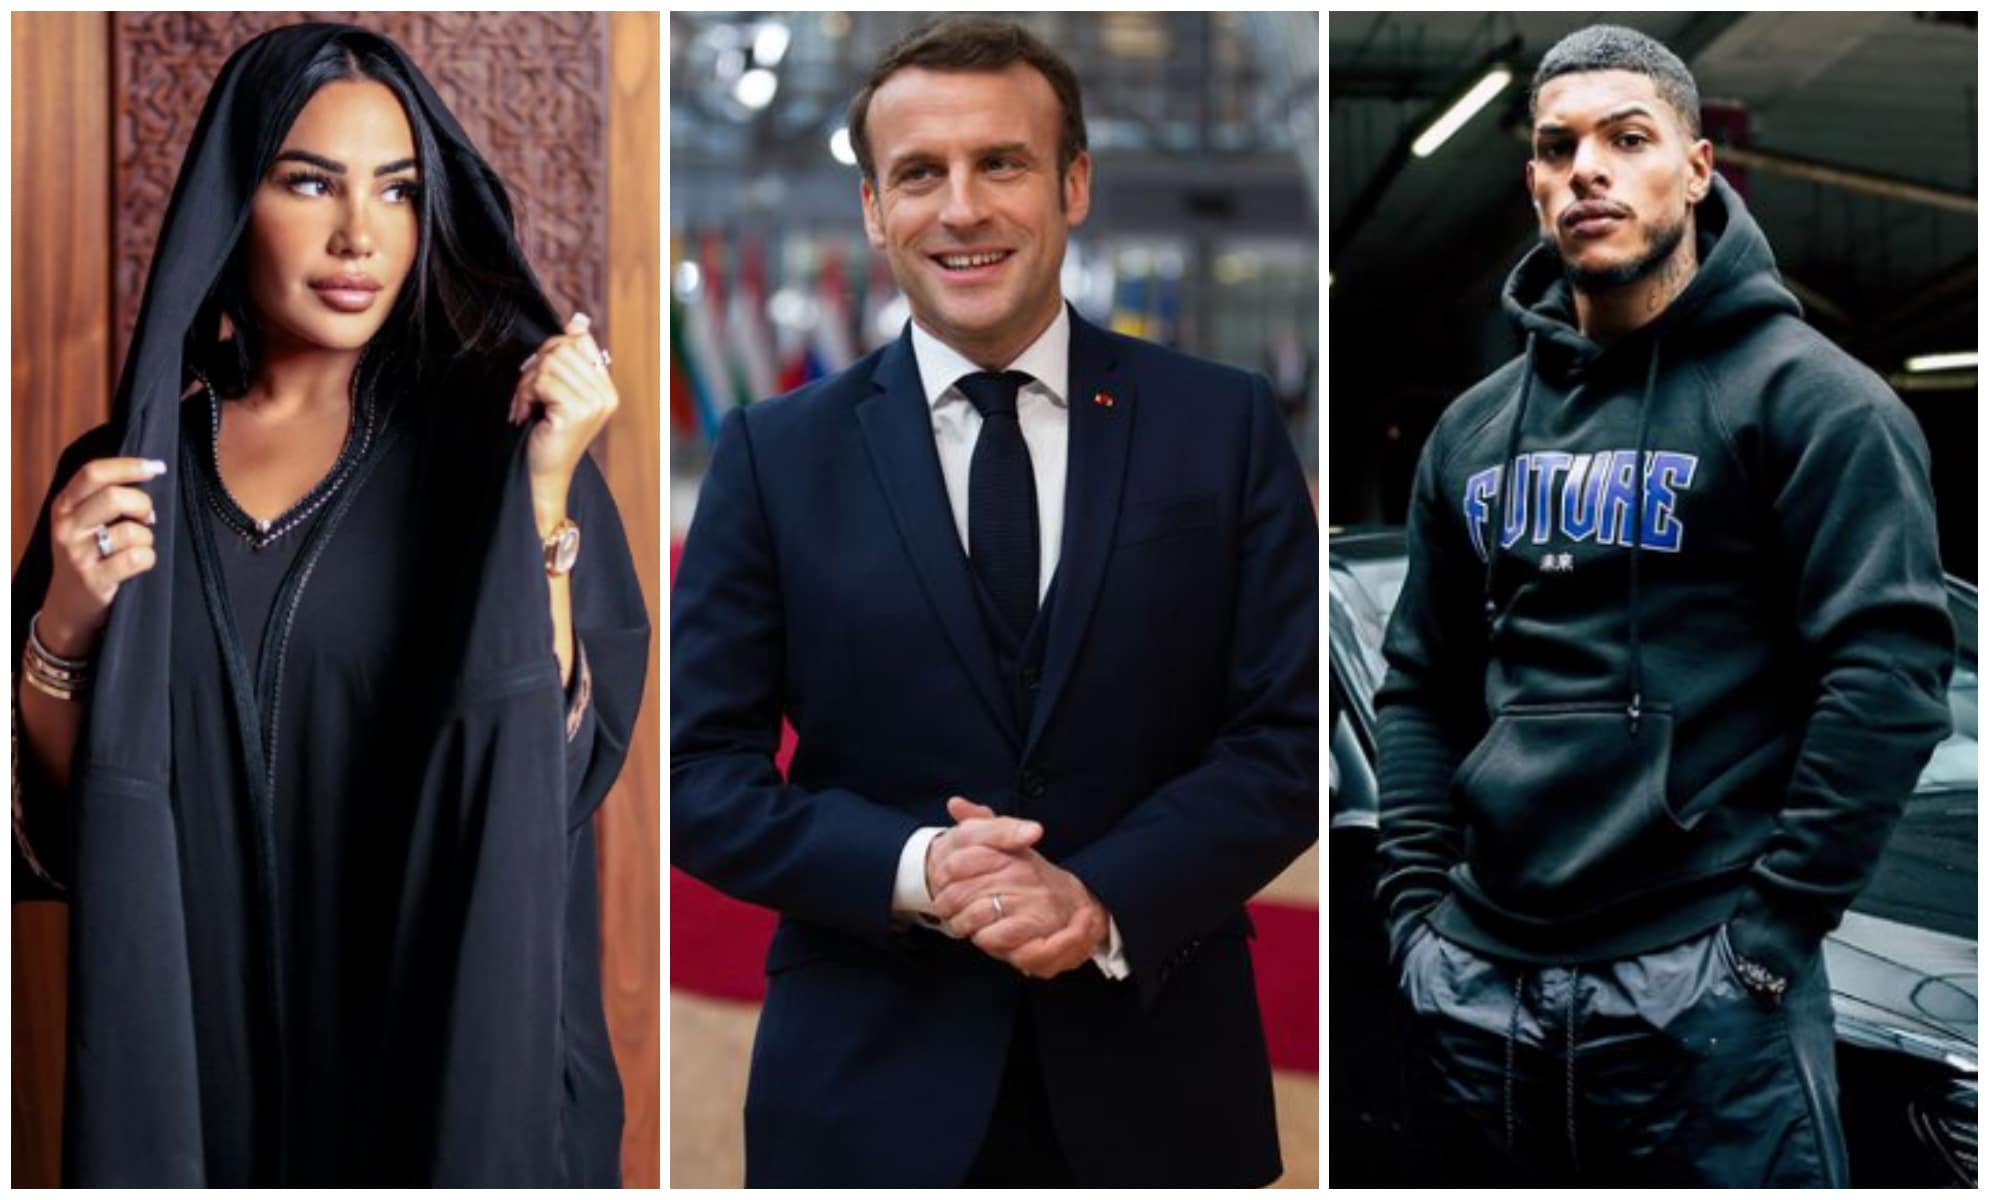 Emmanuel Macron giflé : les candidats de télé-réalité s'expriment